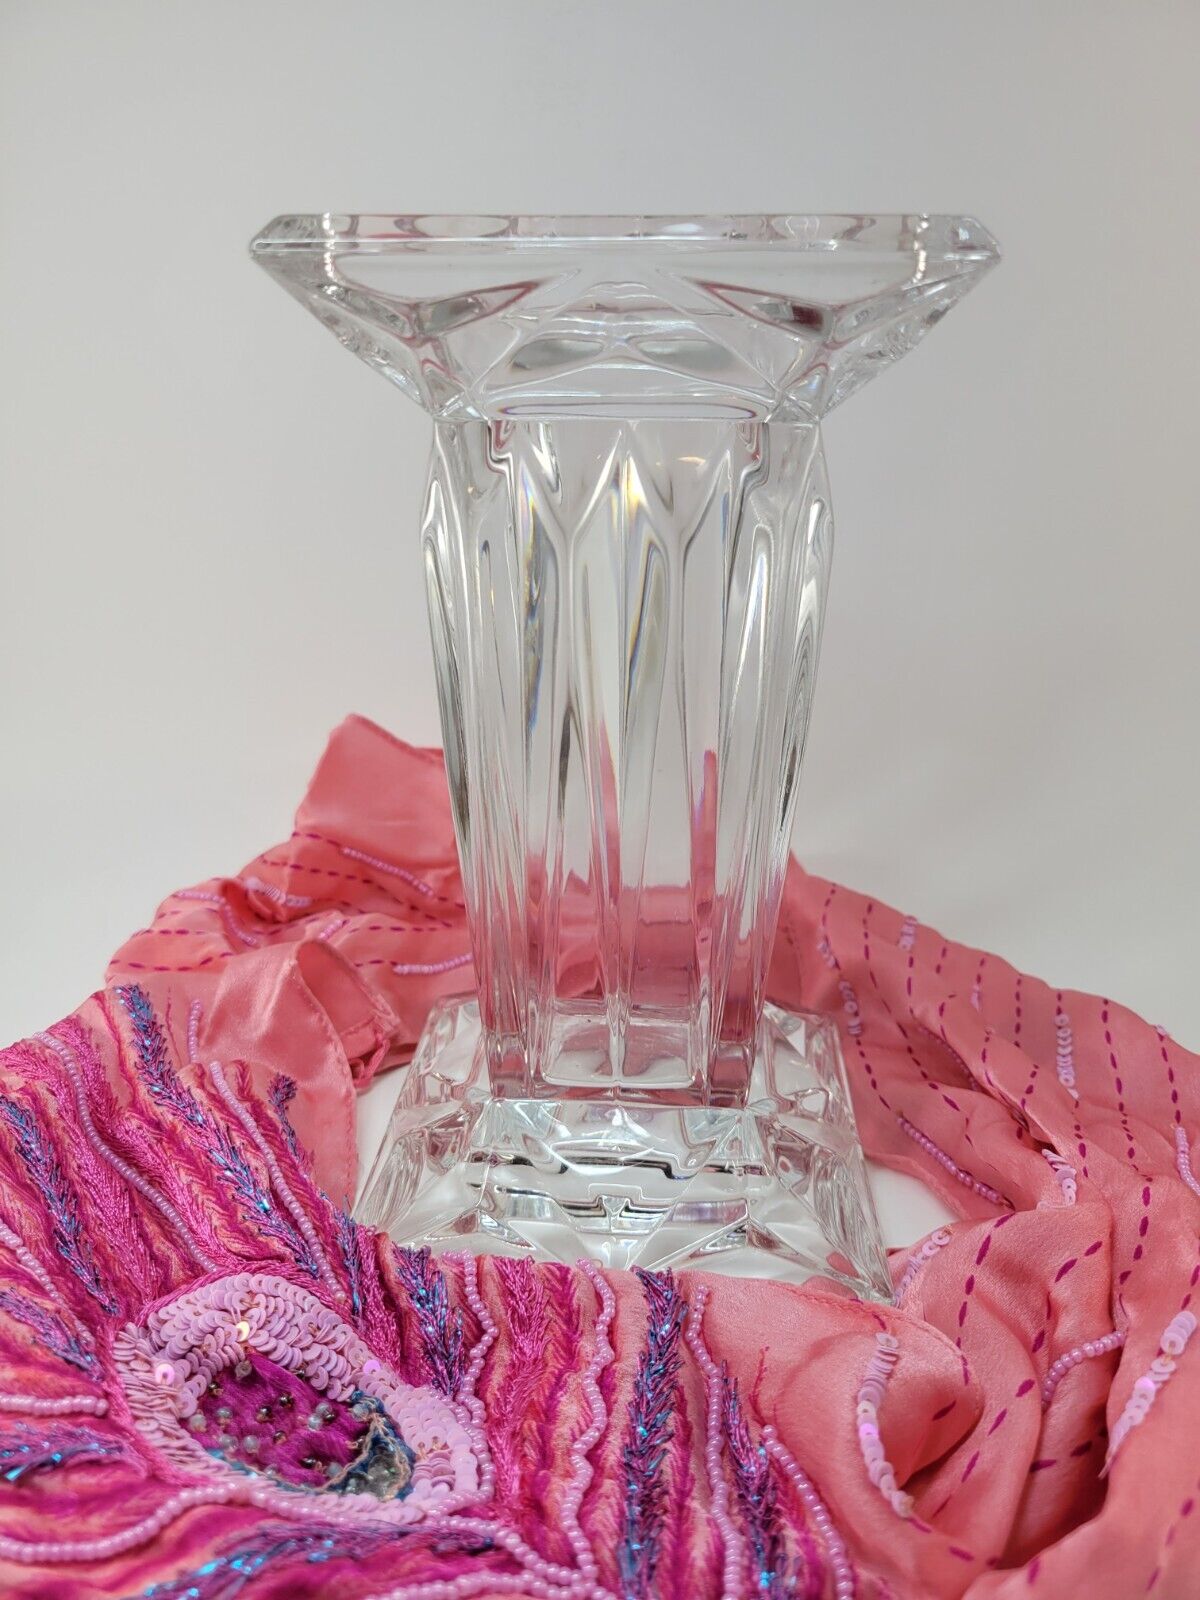 PartyLite Quad Prism Lead Crystal Candle Holder Vase Pedestal Reversible